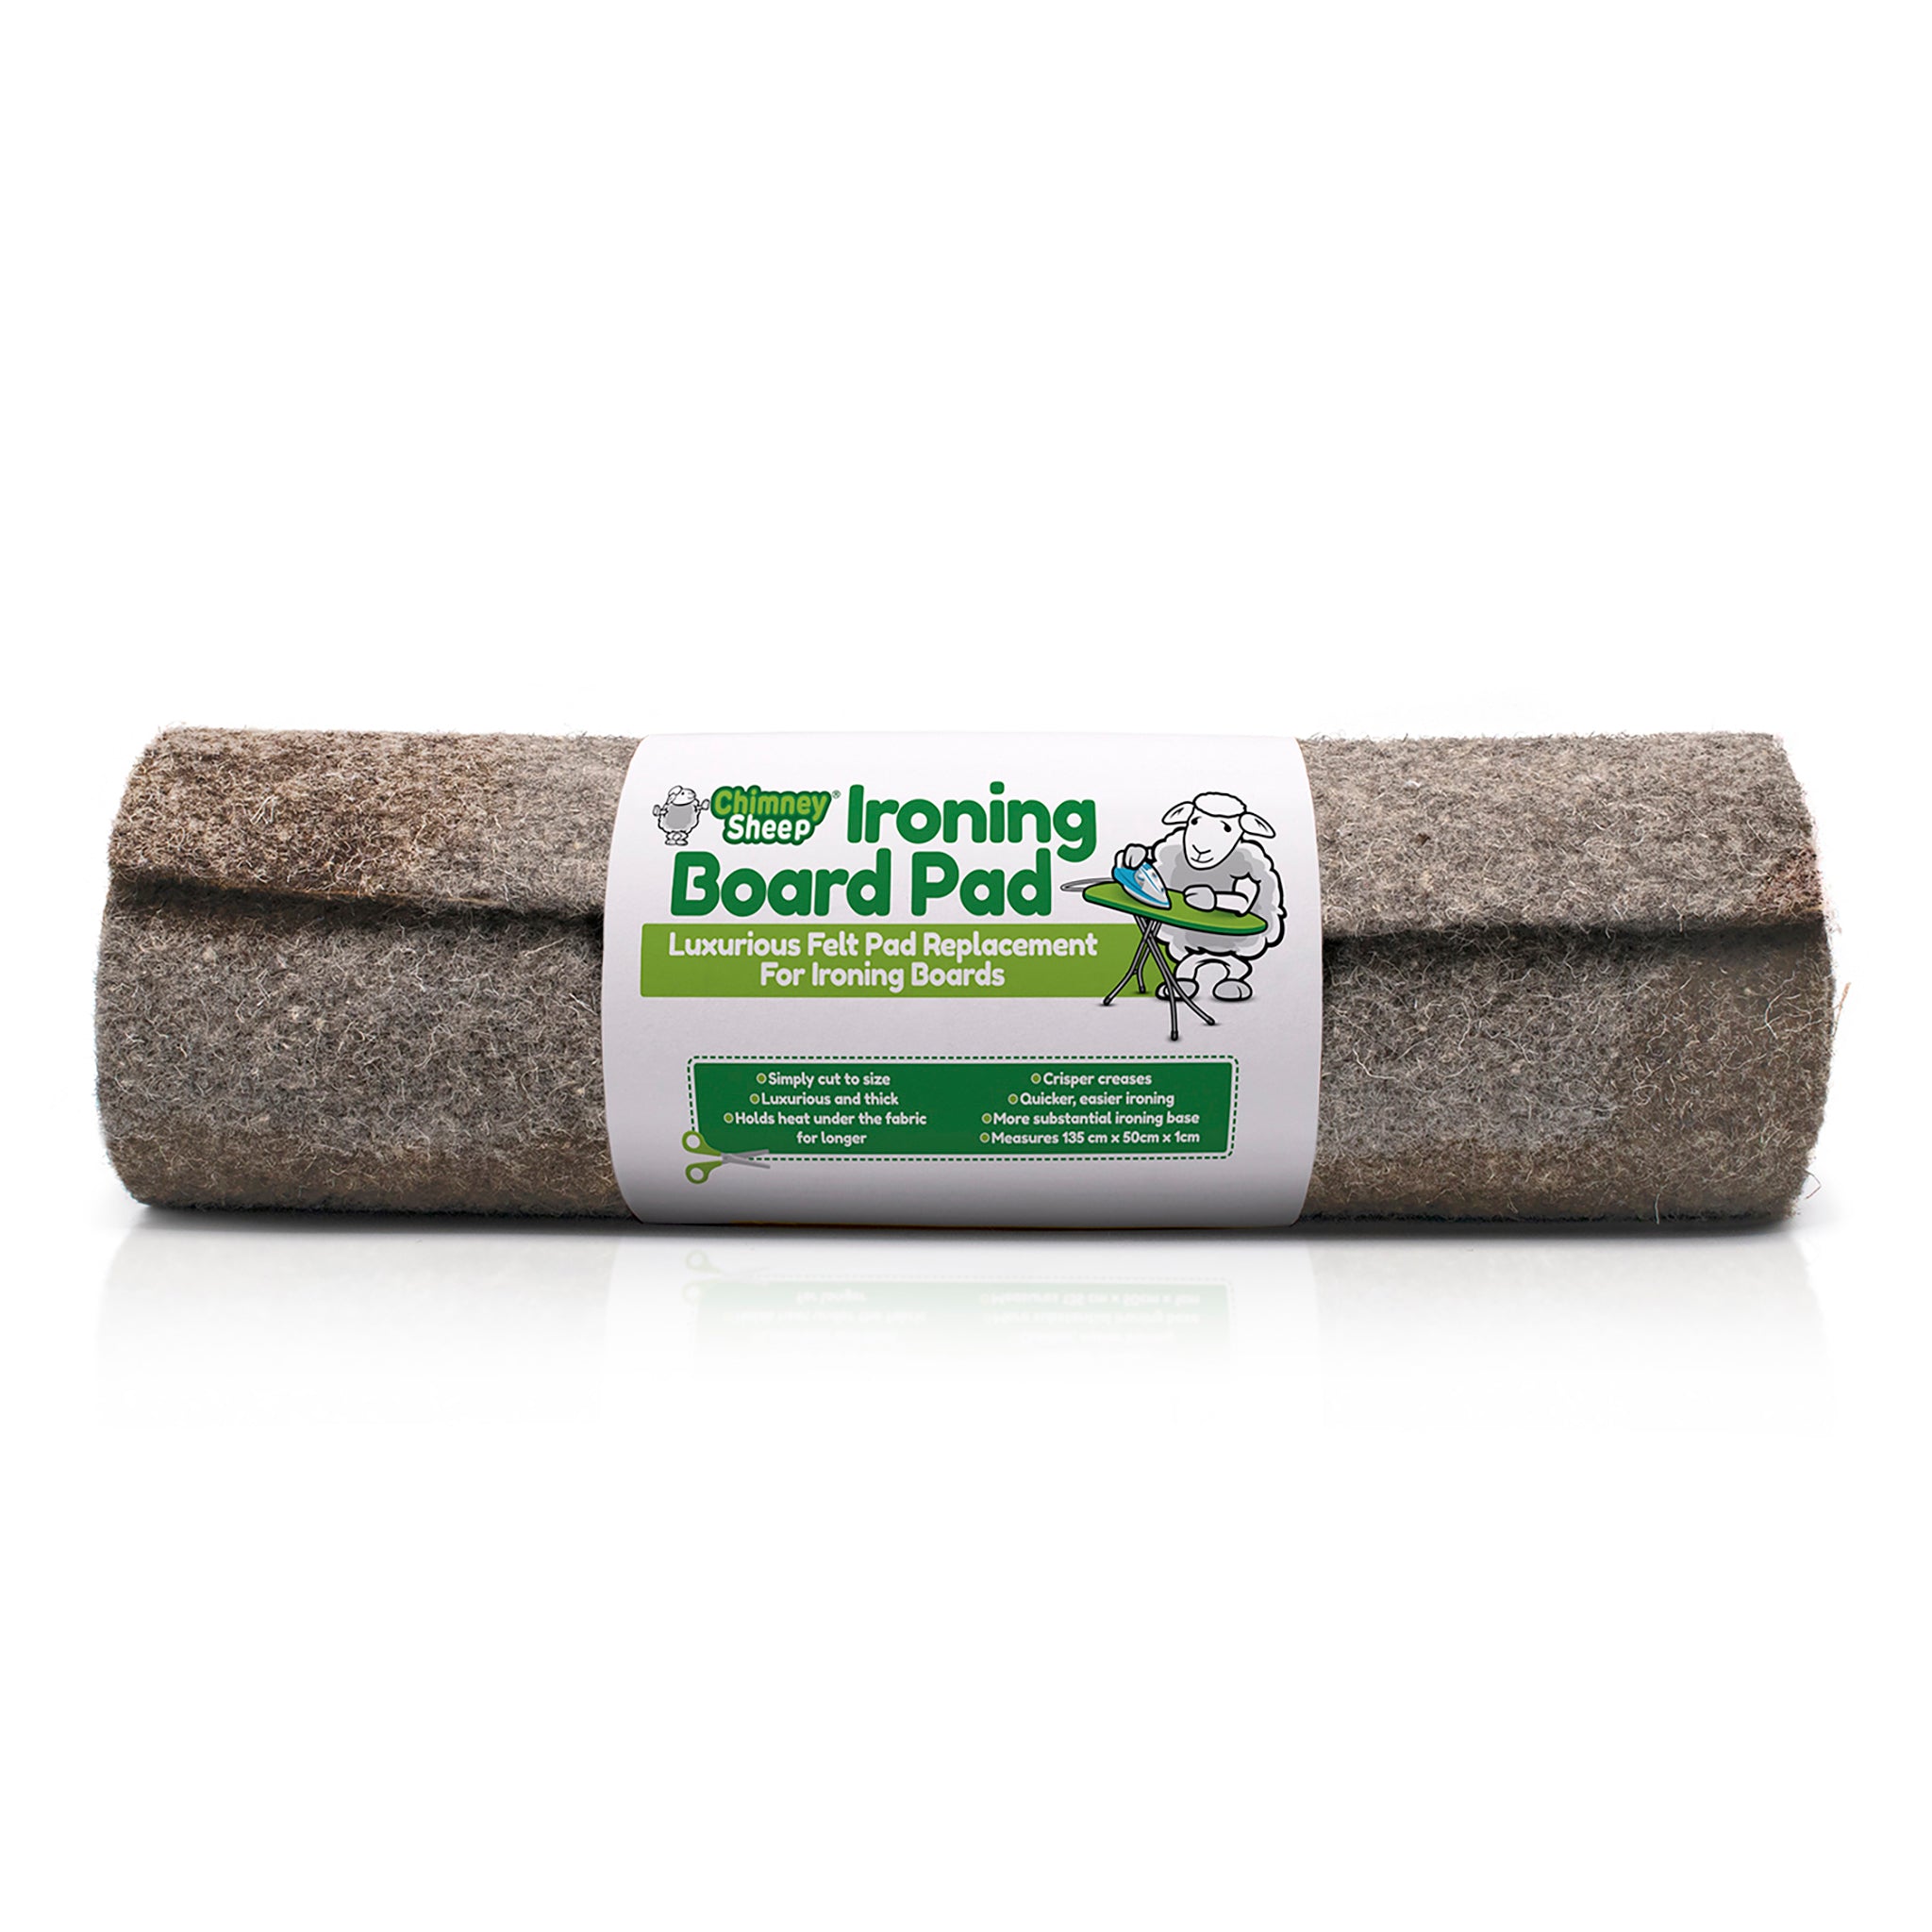 Wool Ironing Board Pad